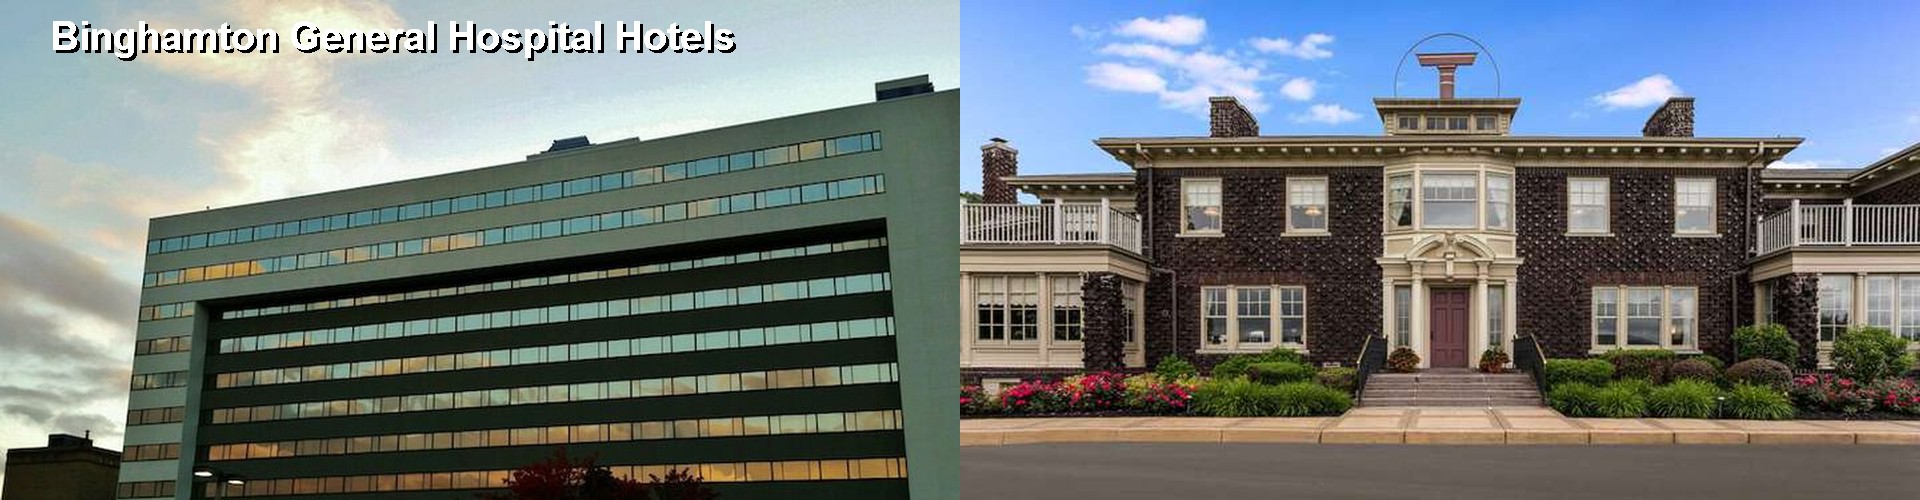 5 Best Hotels near Binghamton General Hospital